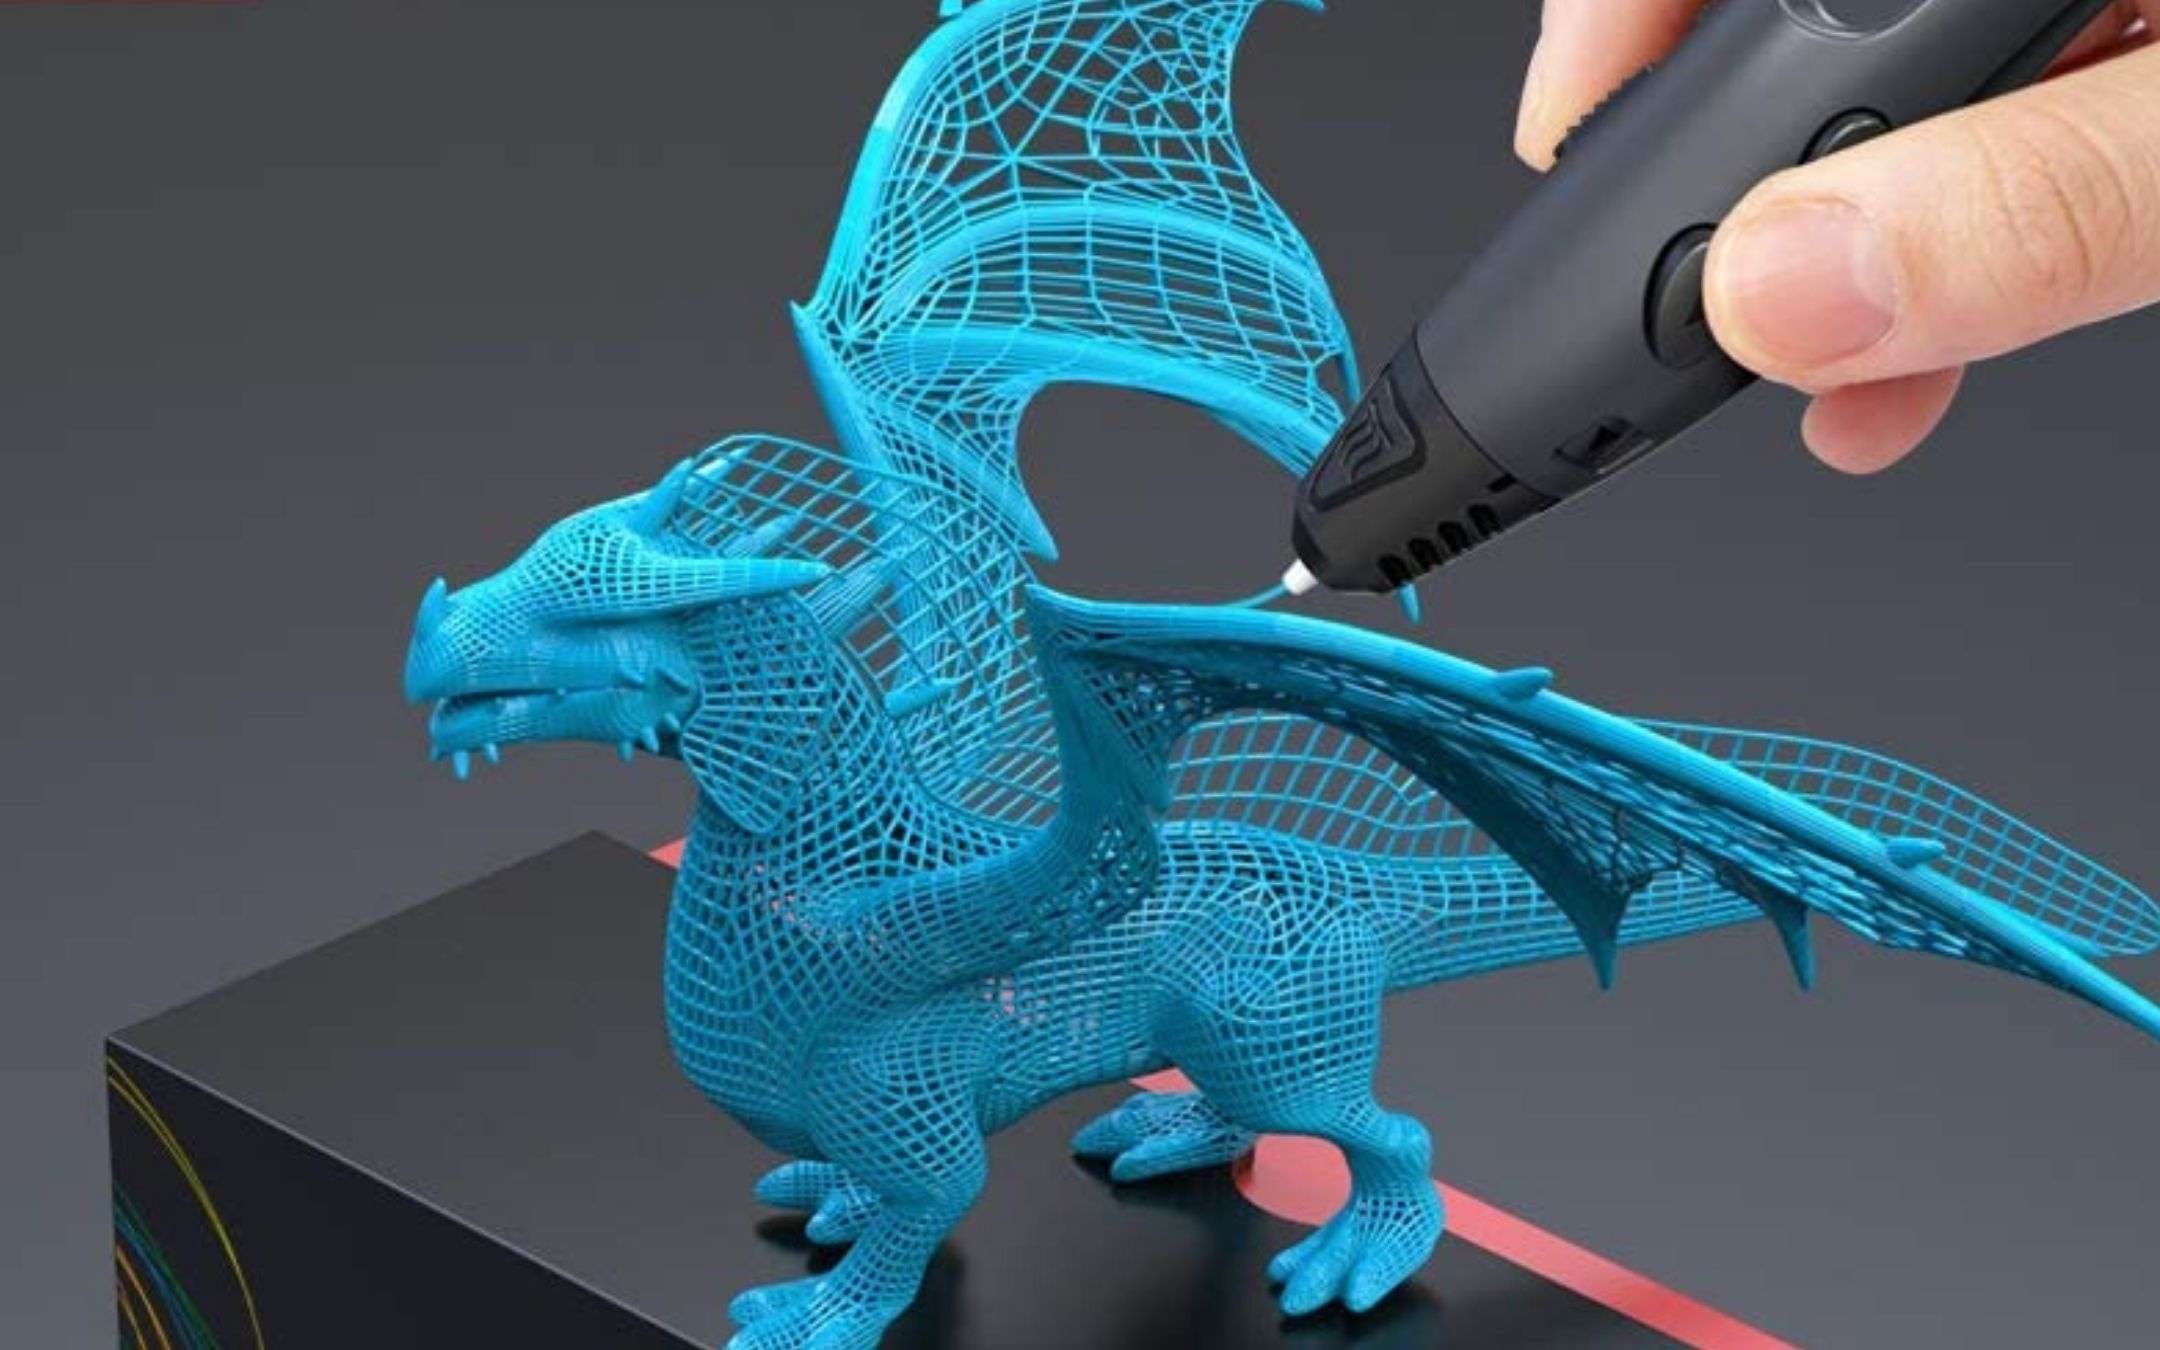 Stampa in 3D con solo 40€: penna in sconto su Amazon